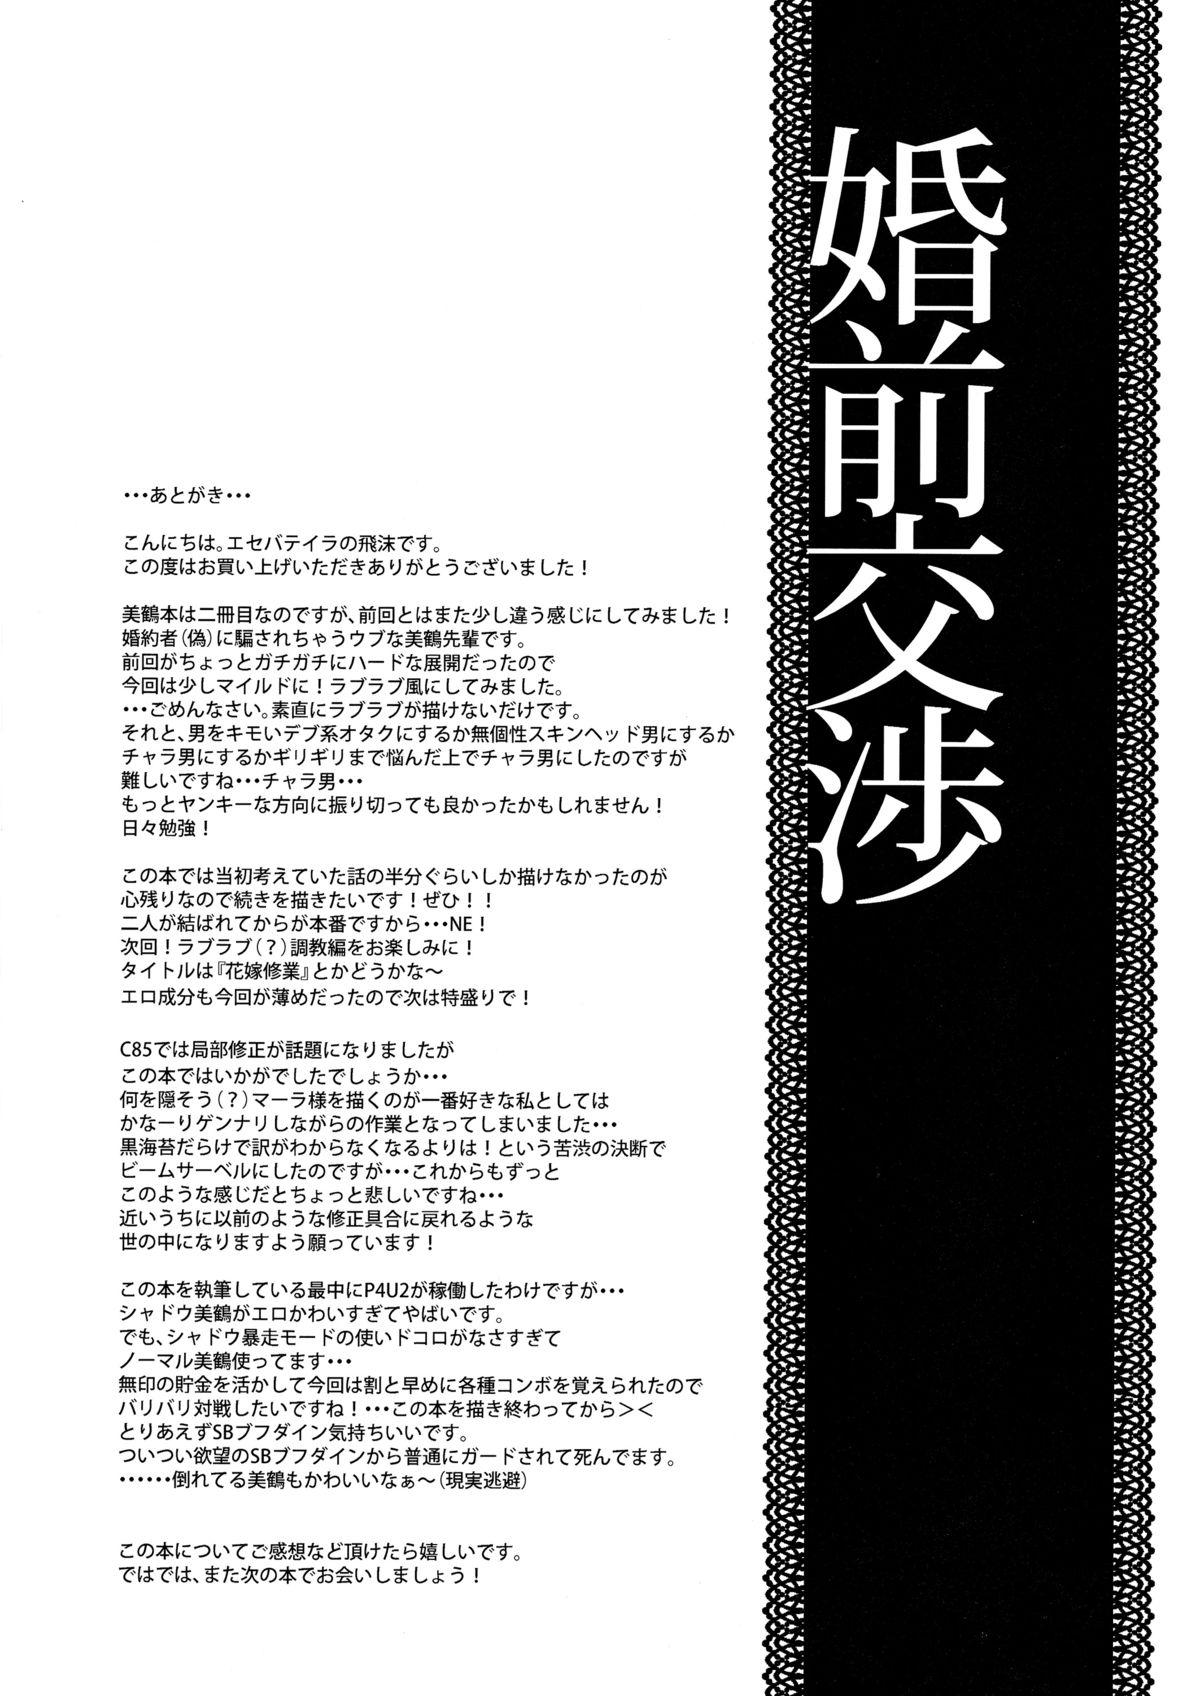 Bucetinha Konzen Koushou - Persona 3 Strap On - Page 24